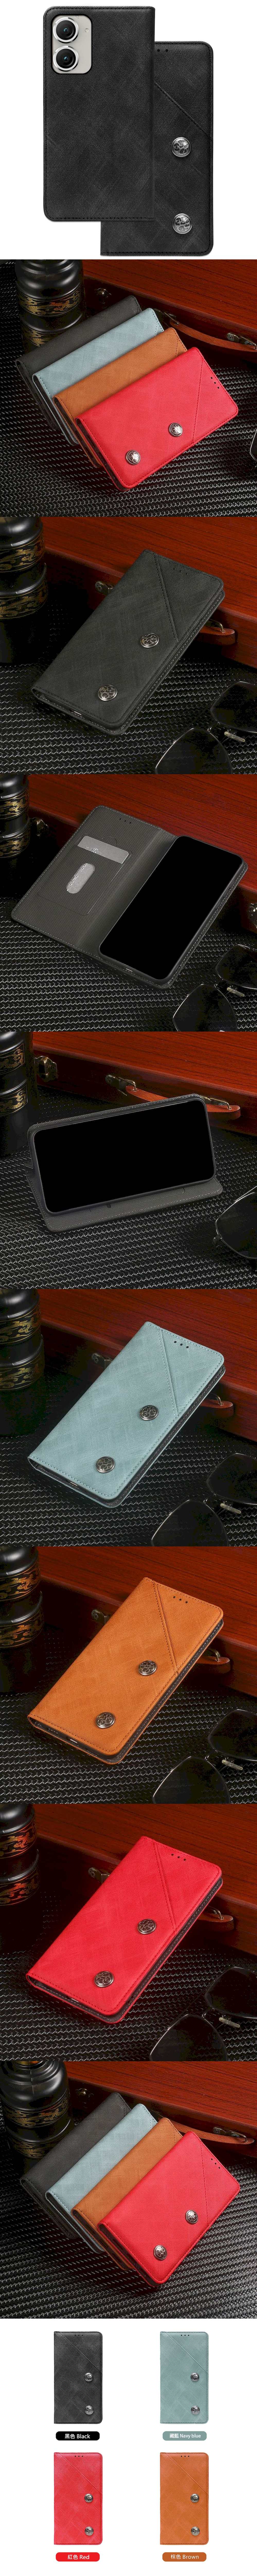 370-Asus-復古隱藏微磁扣設計翻蓋式皮套手機套(Zenfone 8)